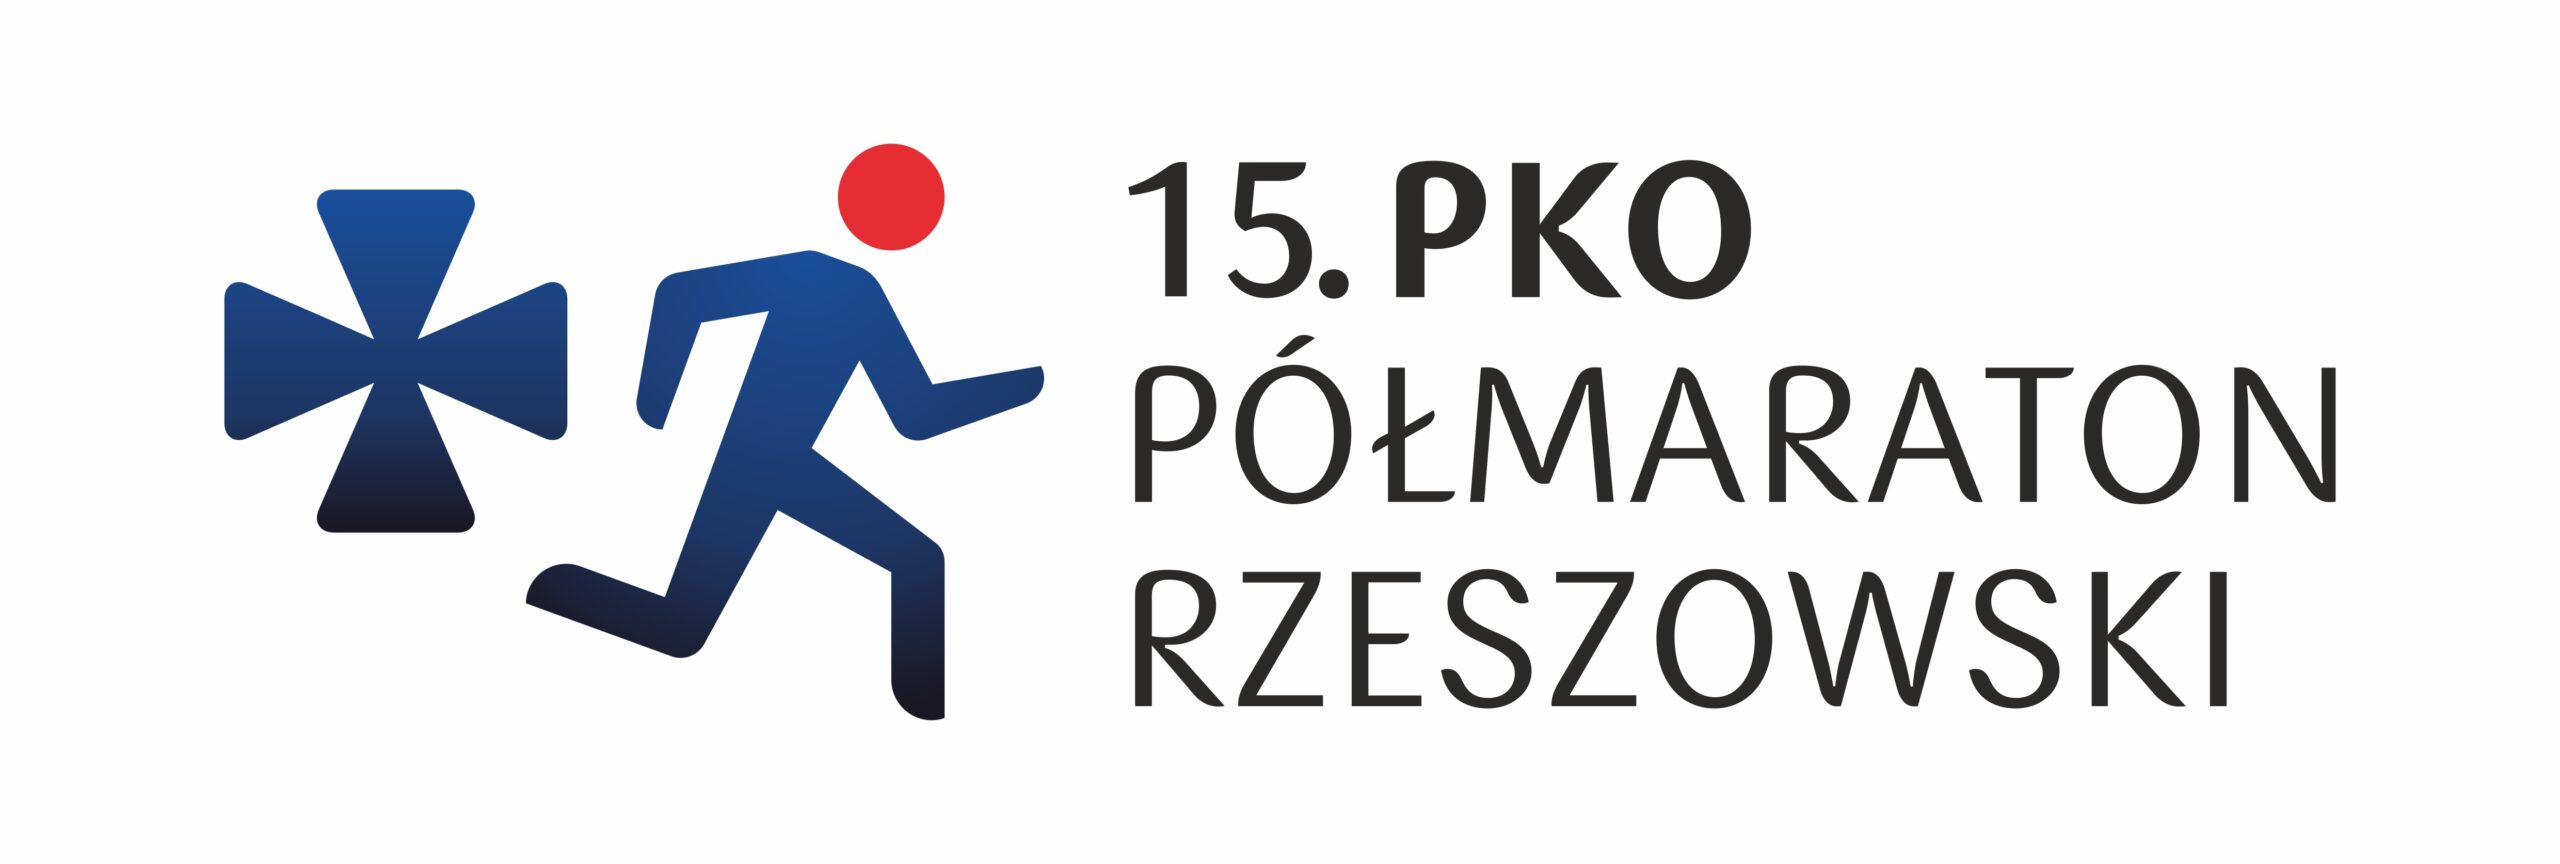 15 pko półmaraton rzeszowski